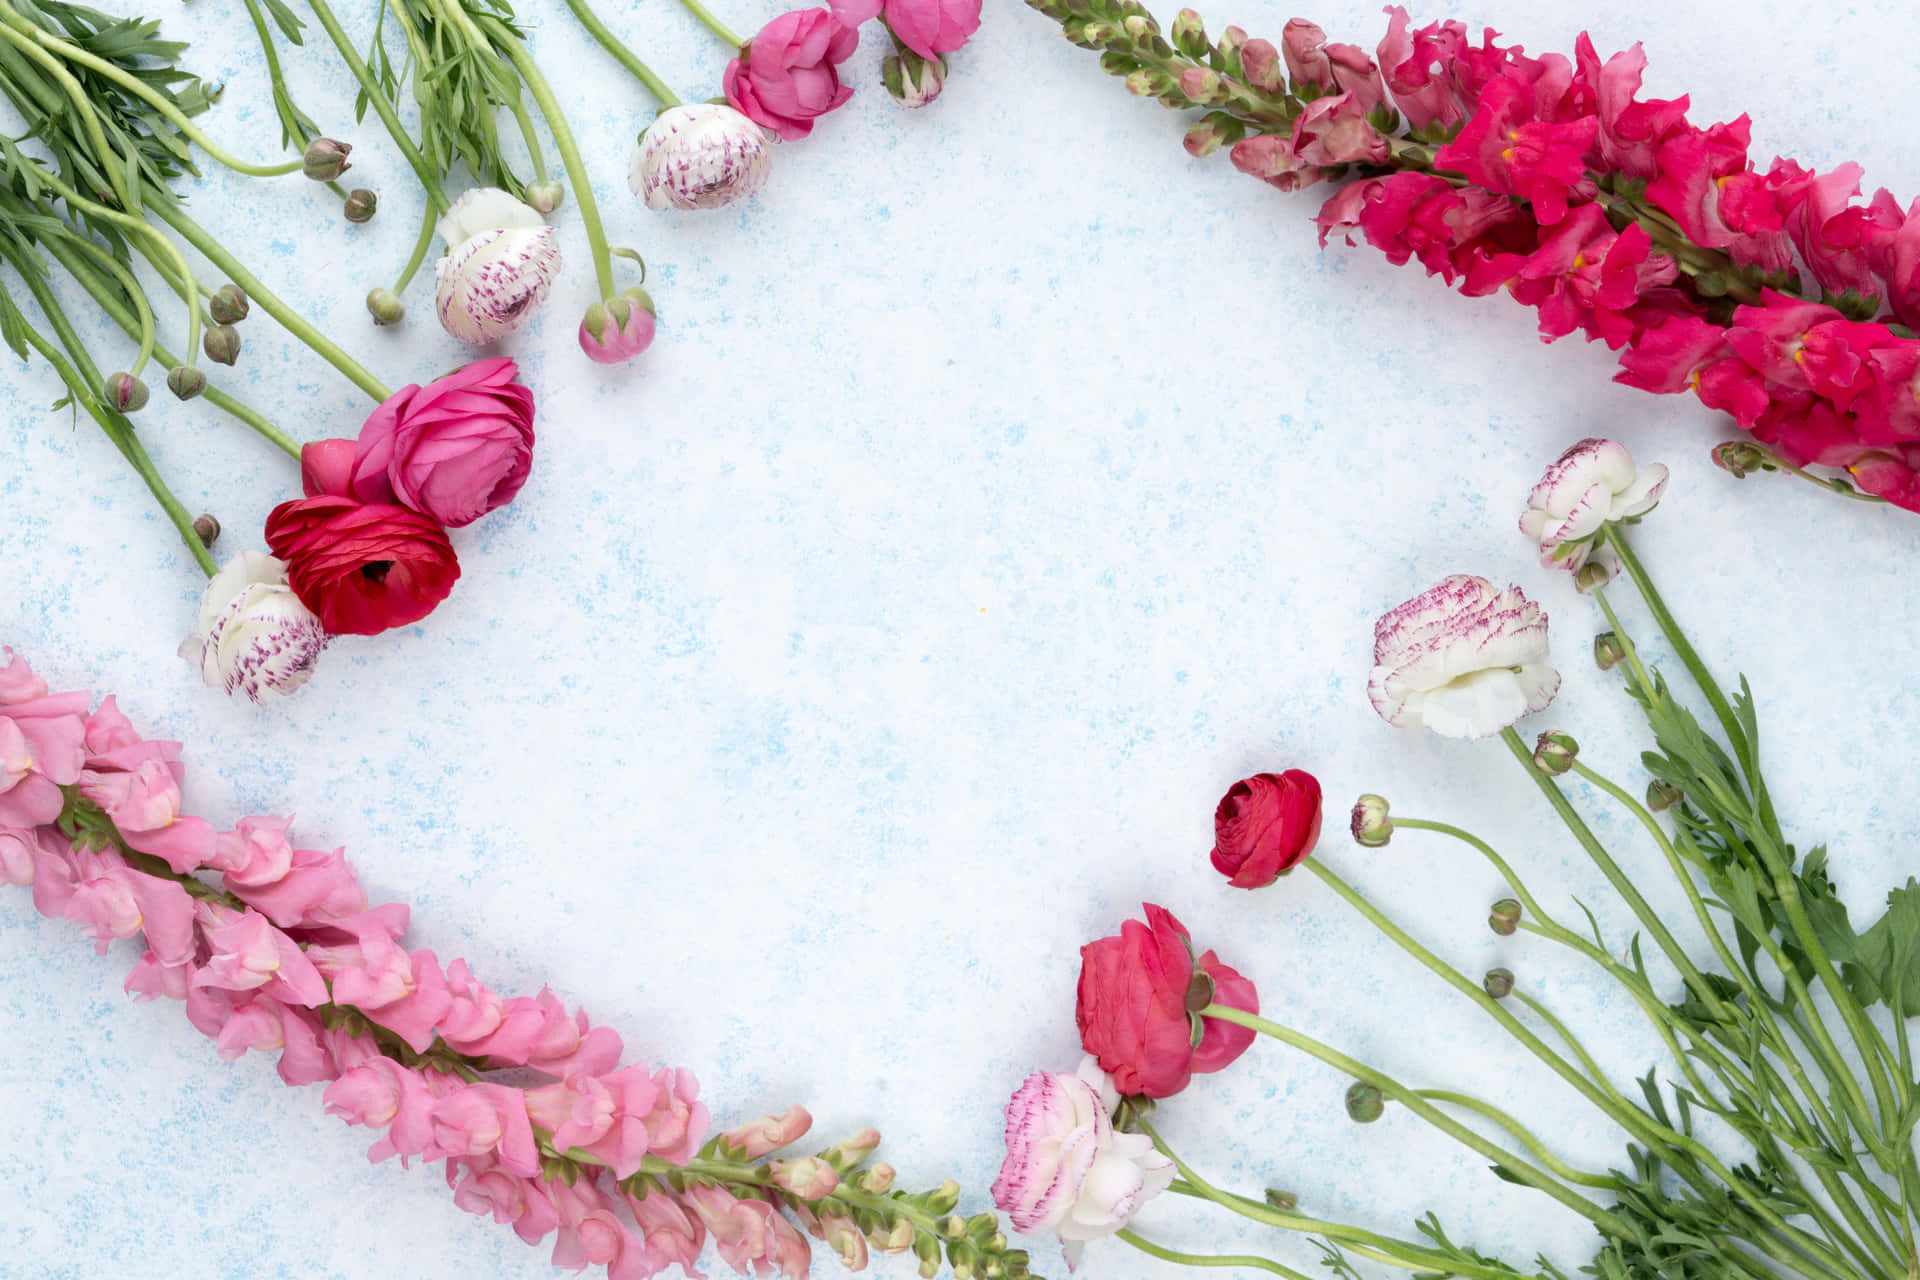 Umbuquê De Flores Cor-de-rosa E Brancas Arranjado Em Formato De Coração